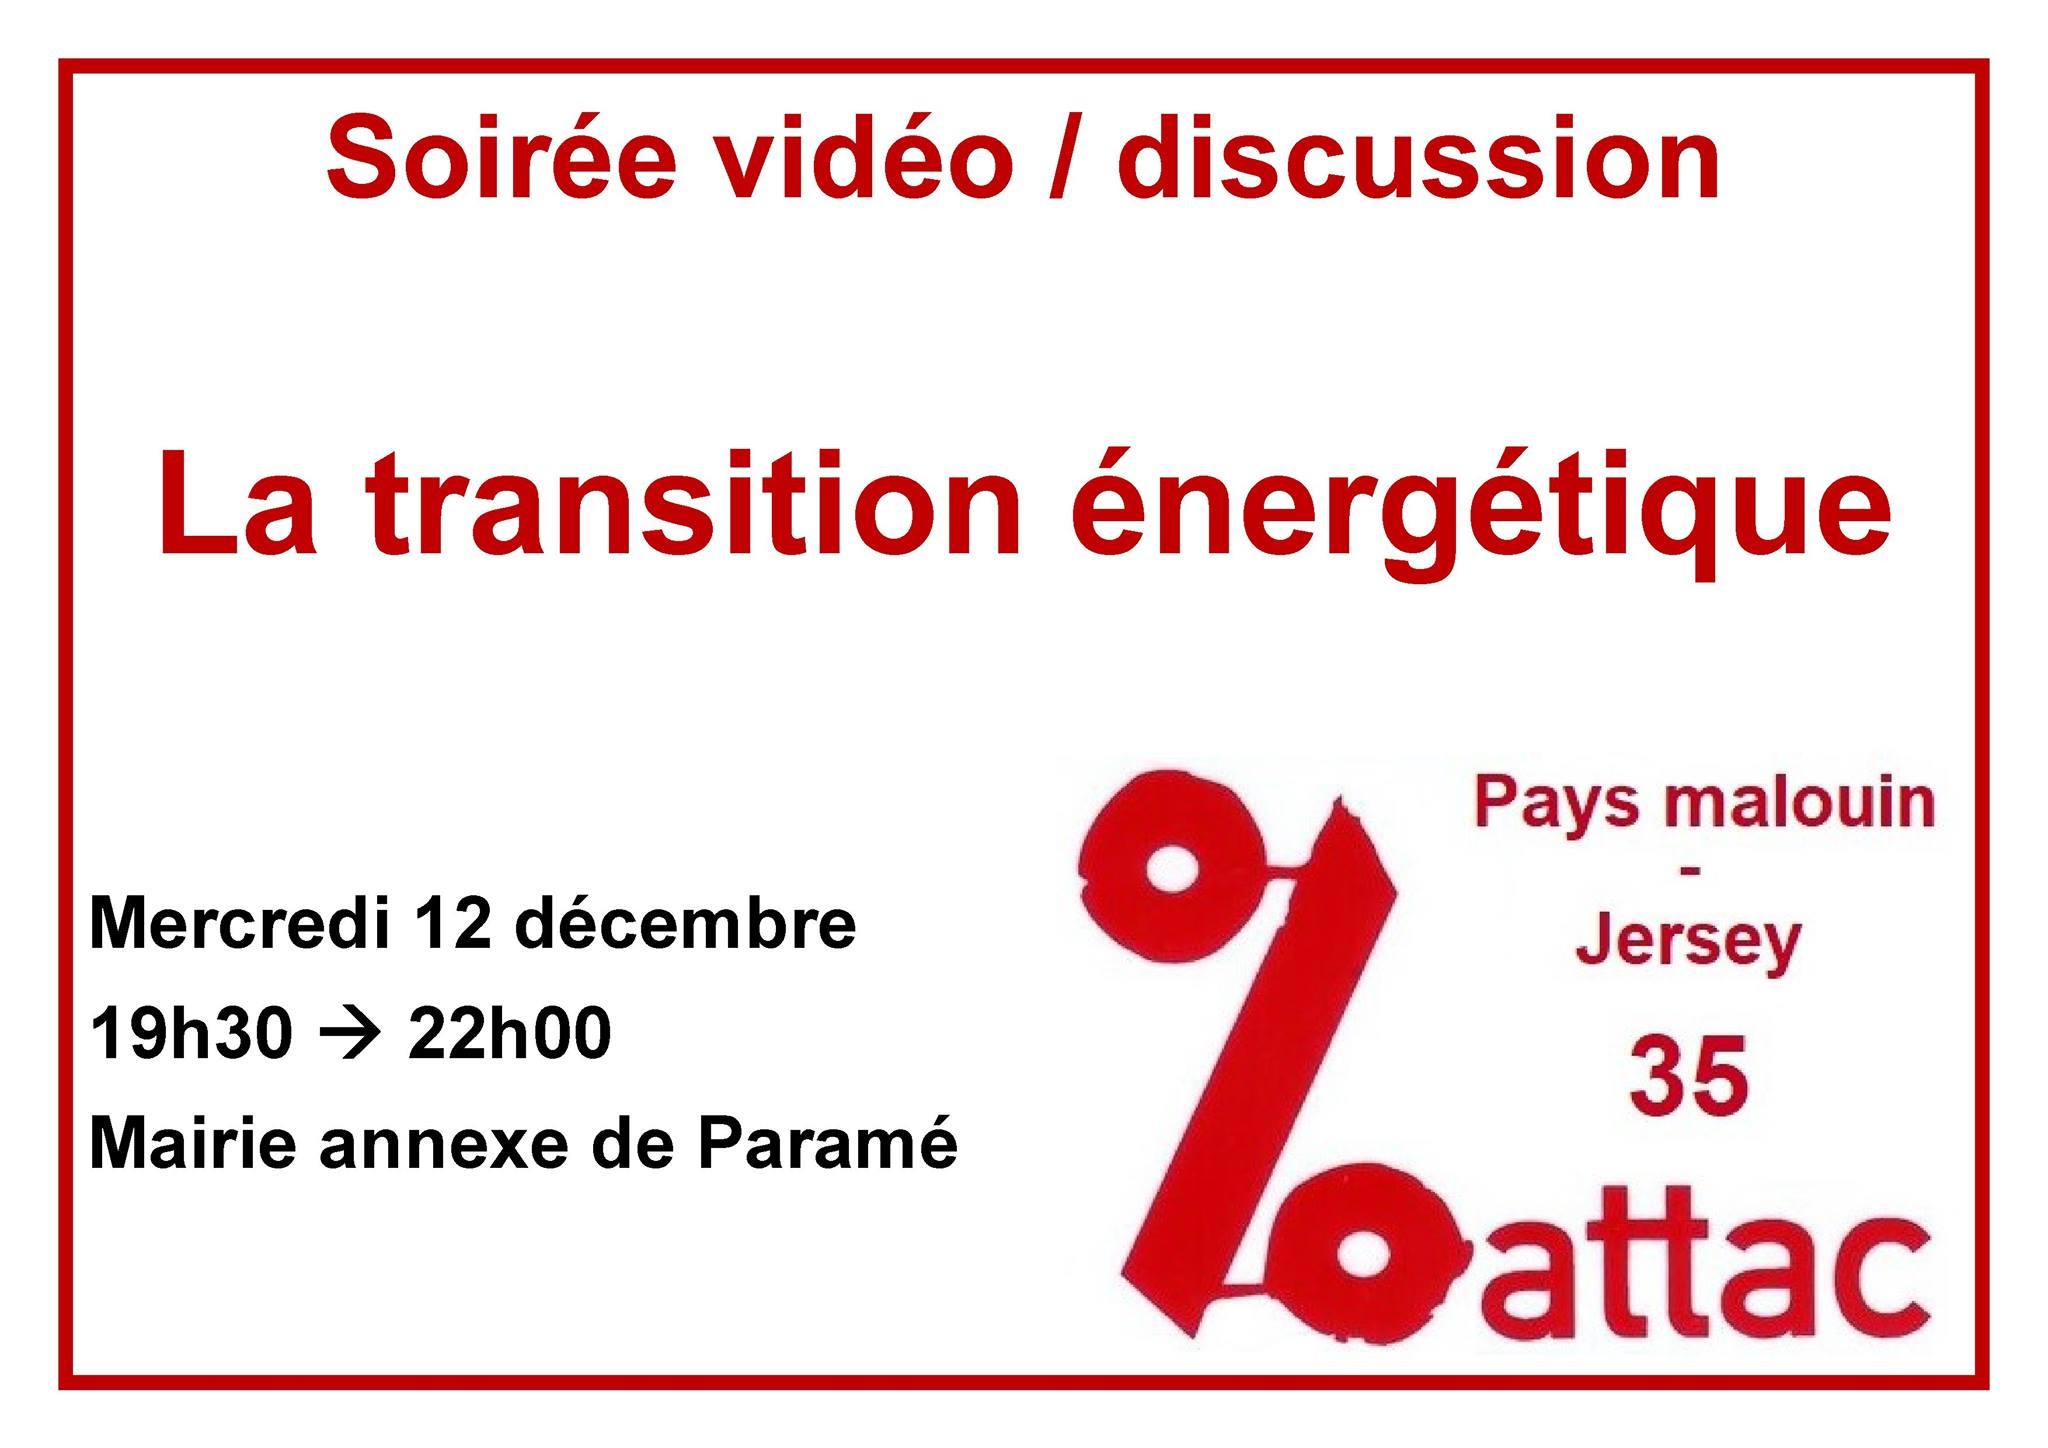 Soirée vidéo / discussion sur la Transition énergétique